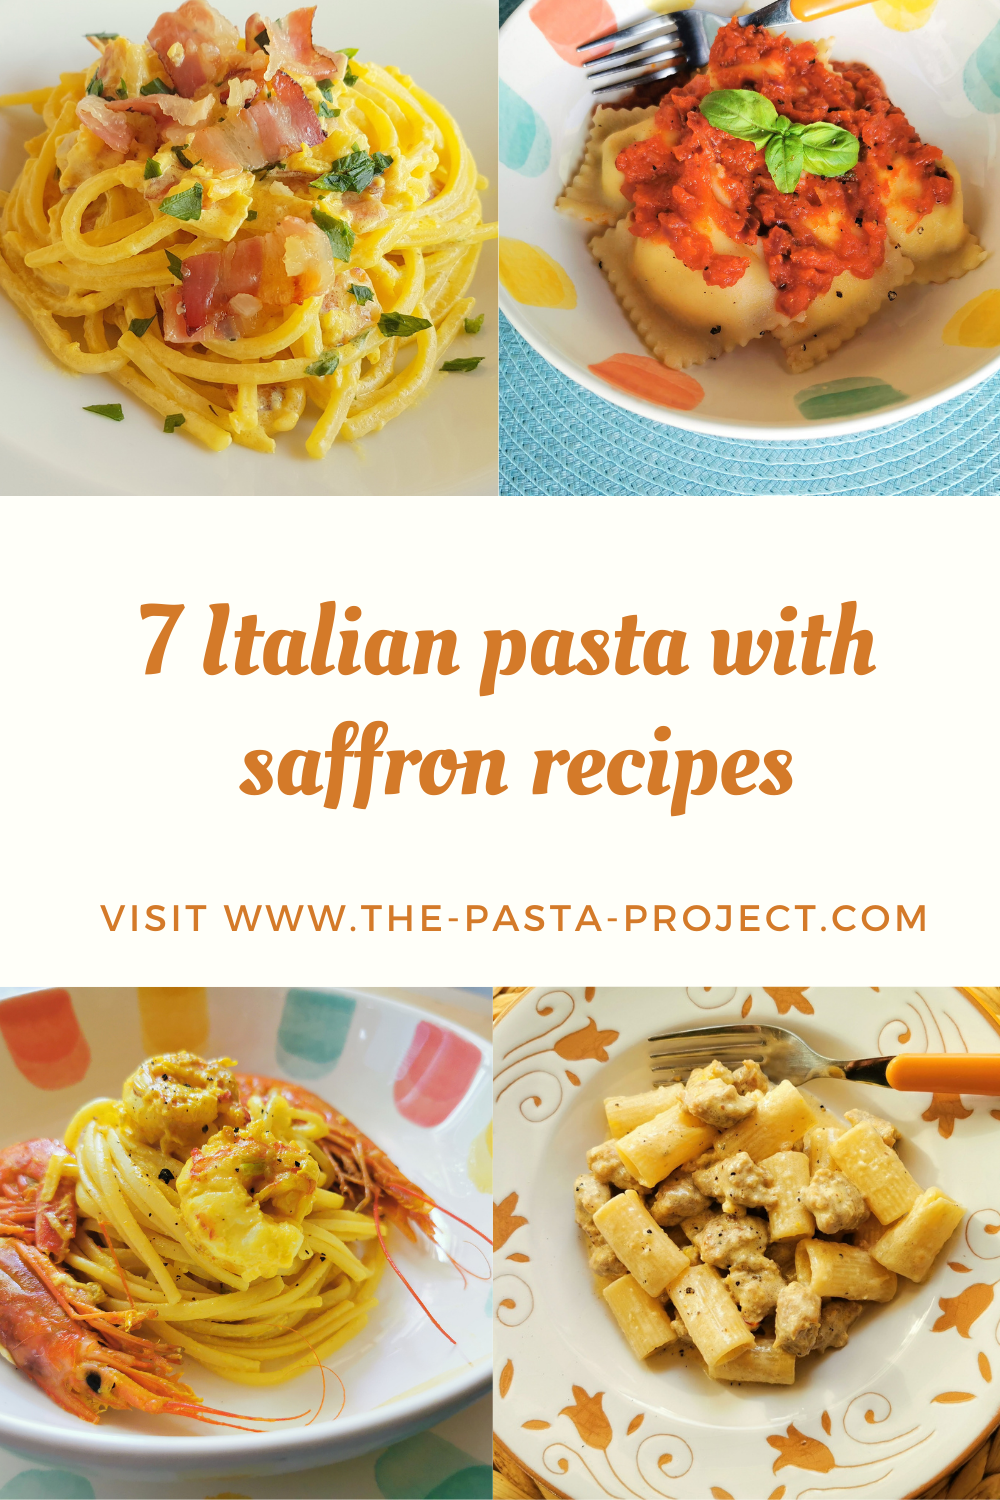 7 Italian pasta with saffron recipes